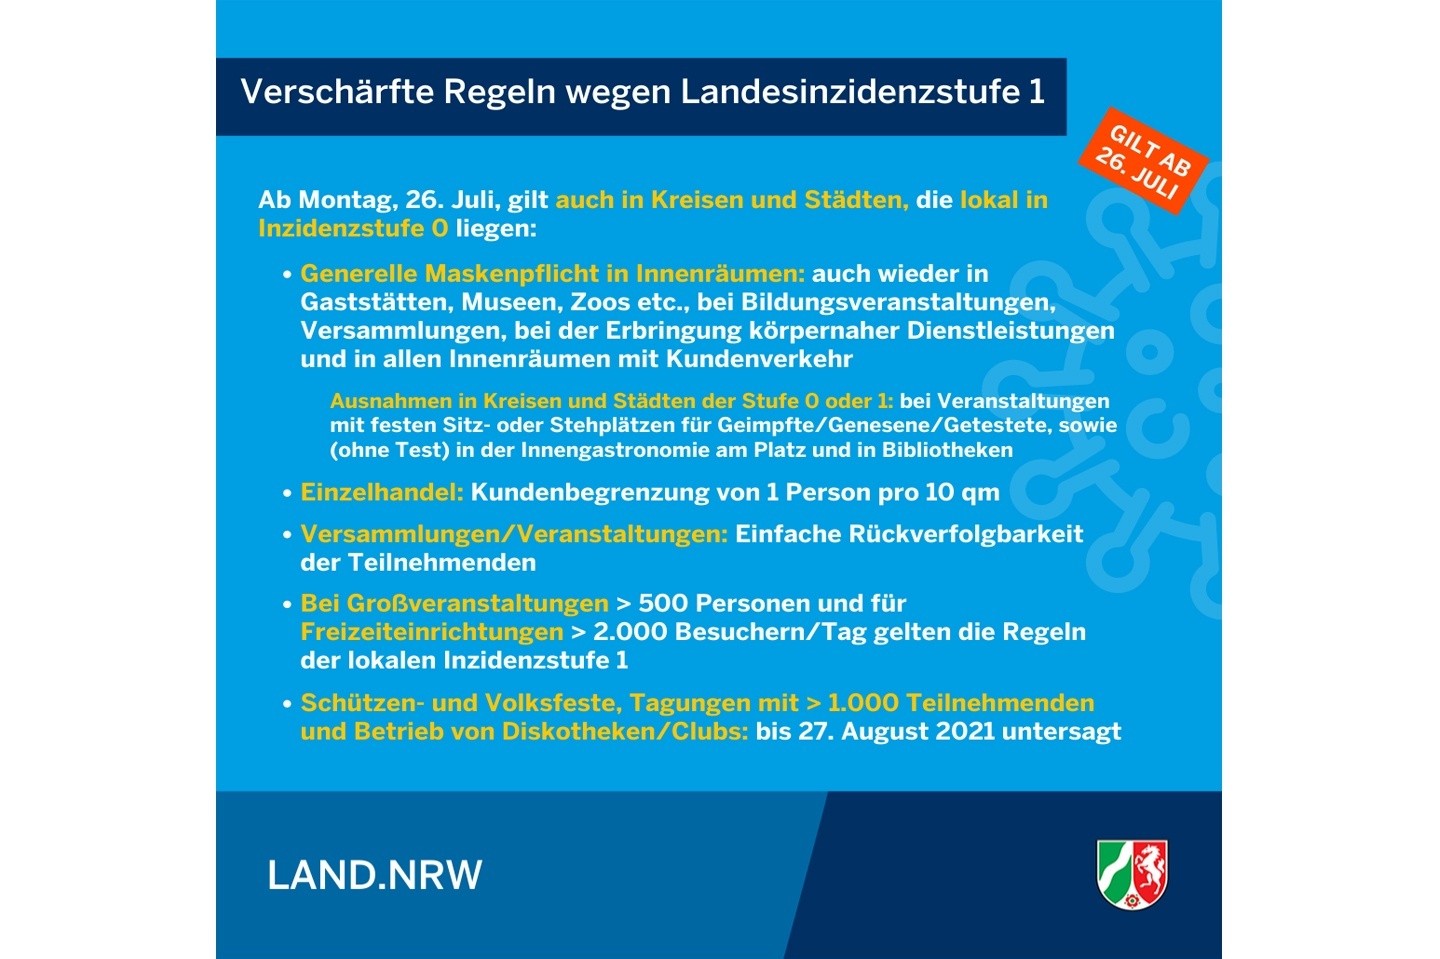 Ab Montag (26. Juli) gilt in Nordrhein-Westfalen wieder die Landesinzidenzstufe 1